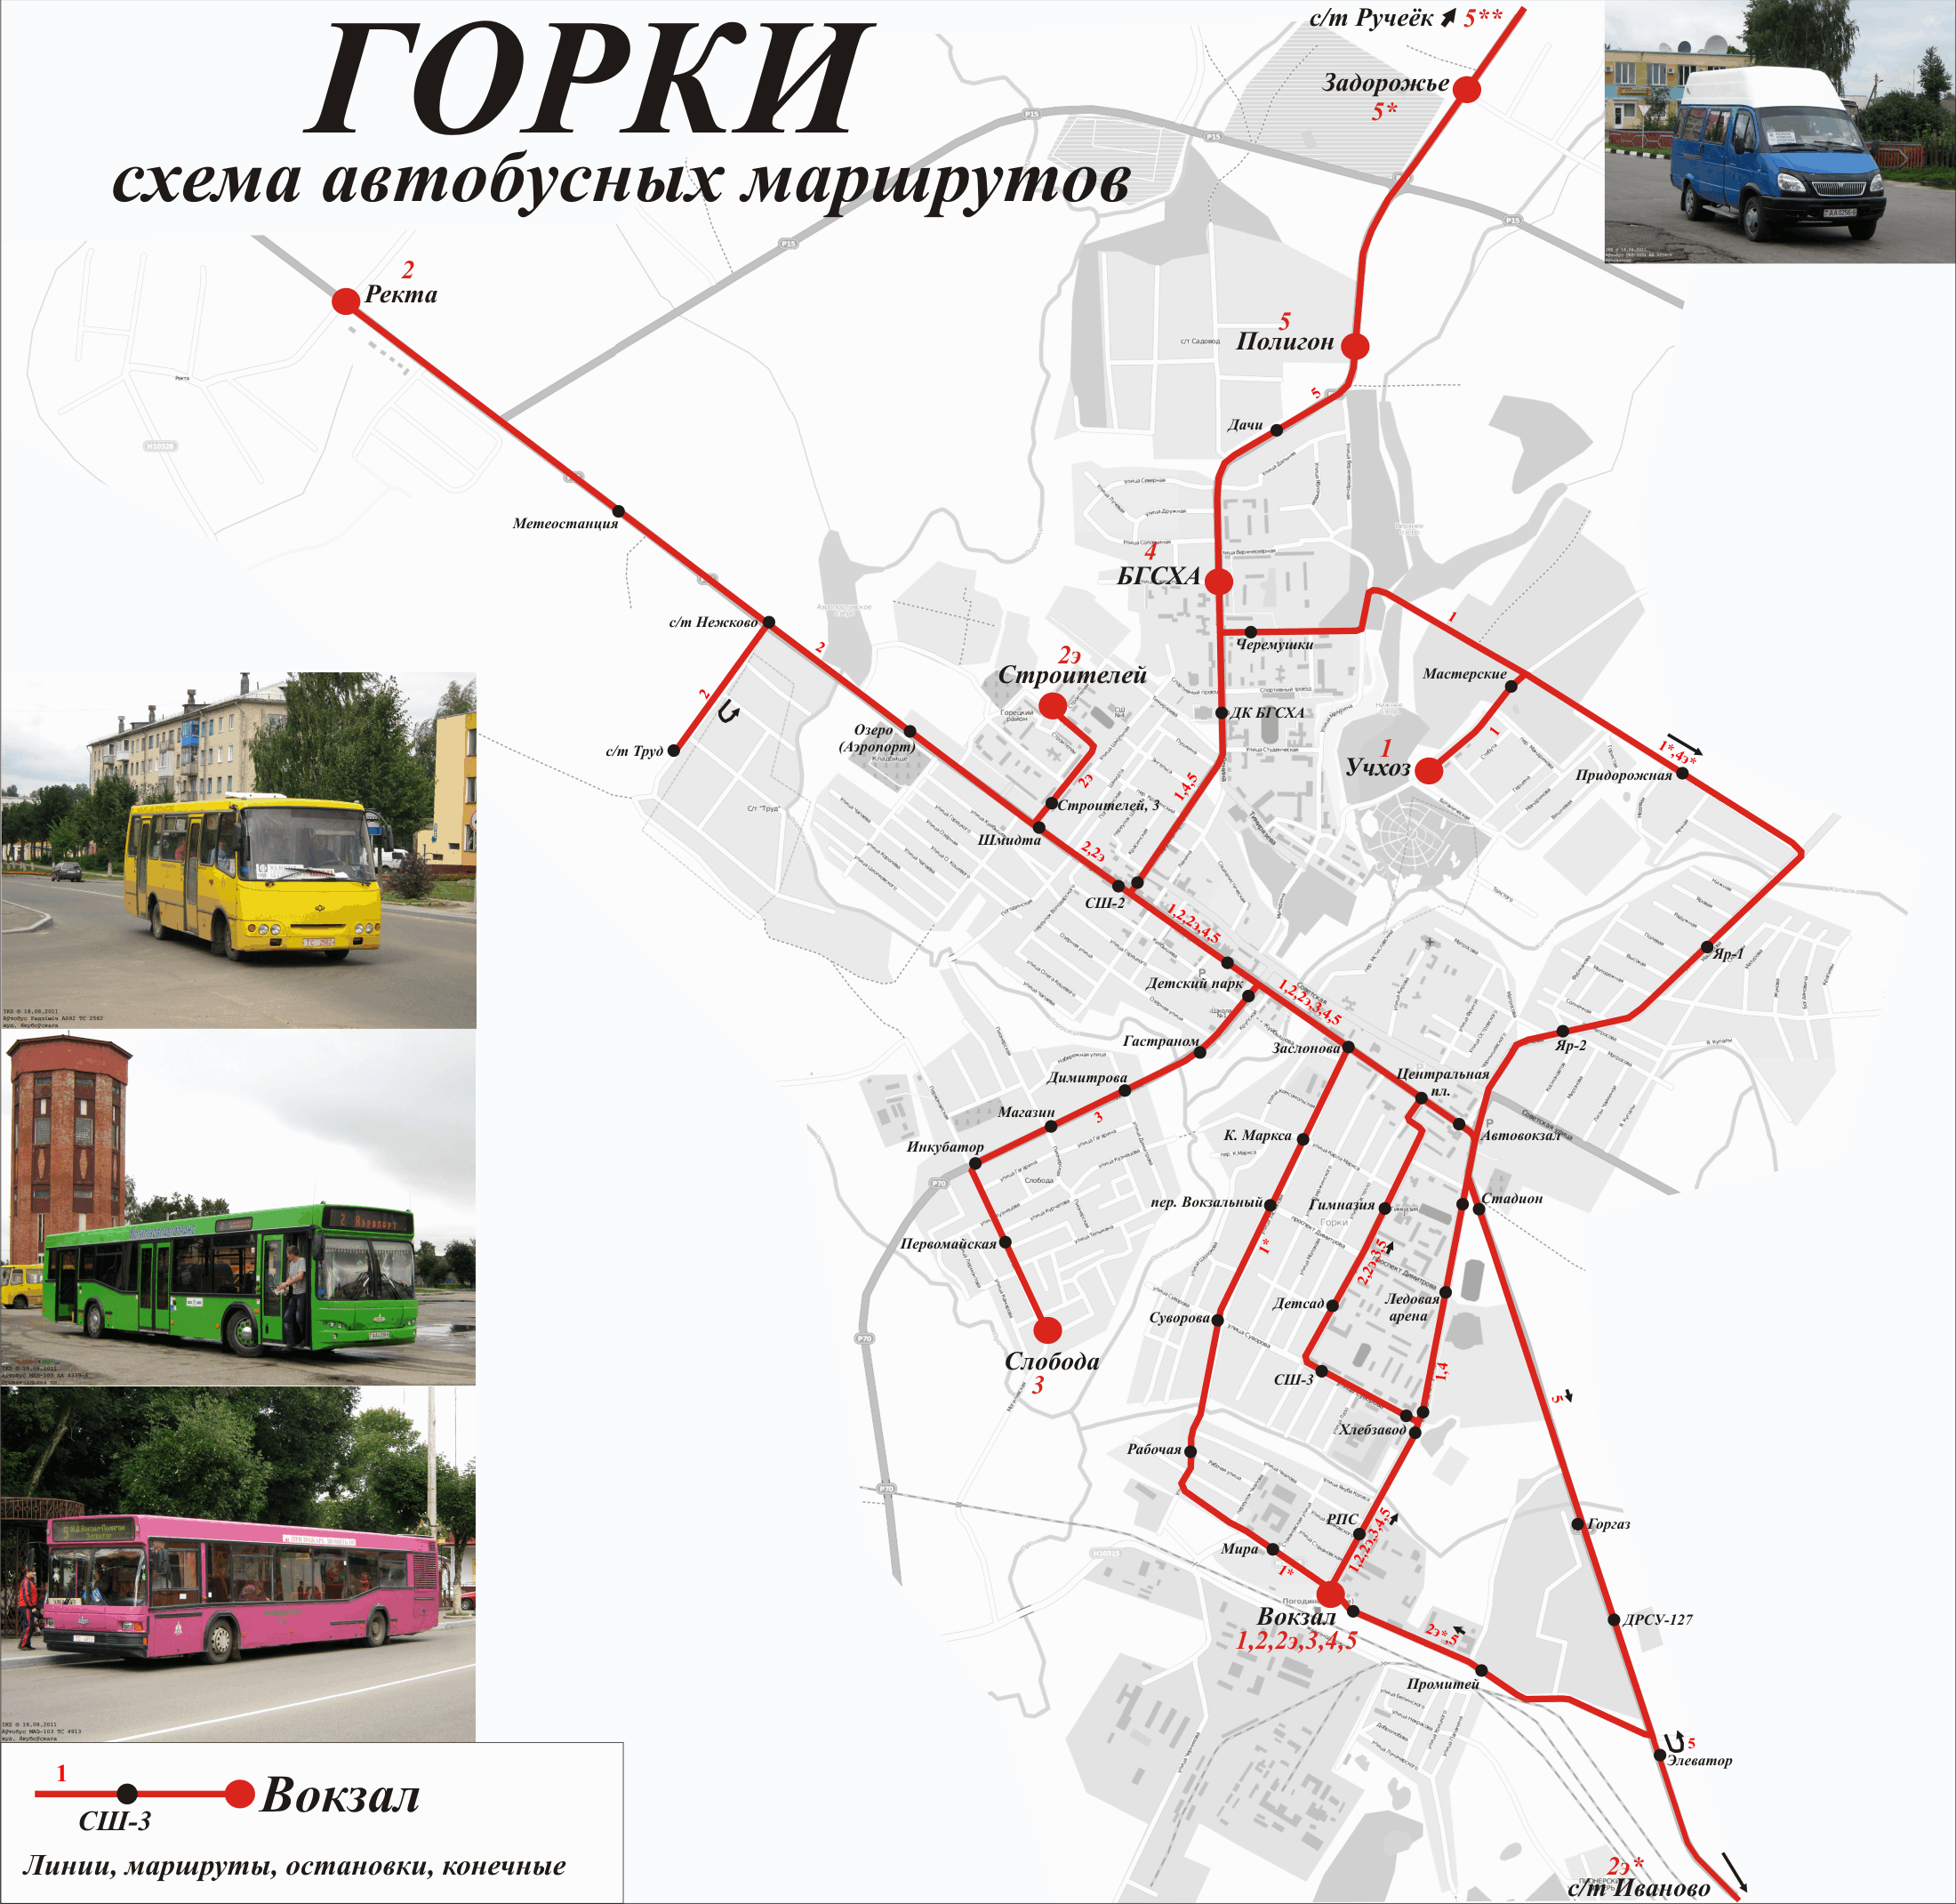 Gorki — Maps; Maps routes